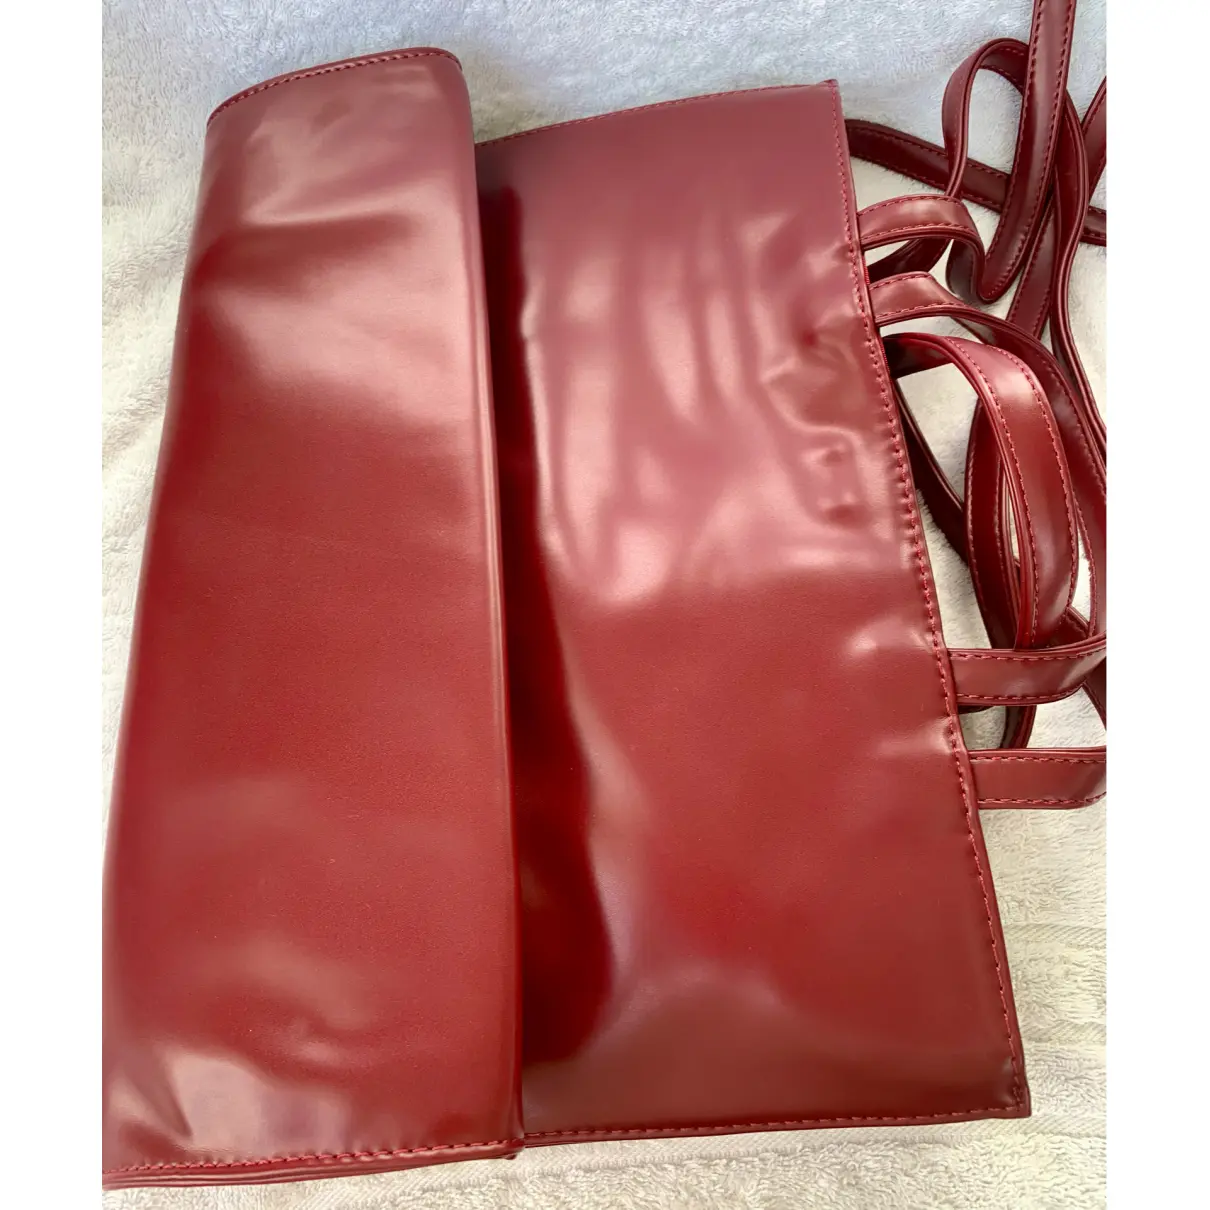 Buy Telfar Vegan leather handbag online